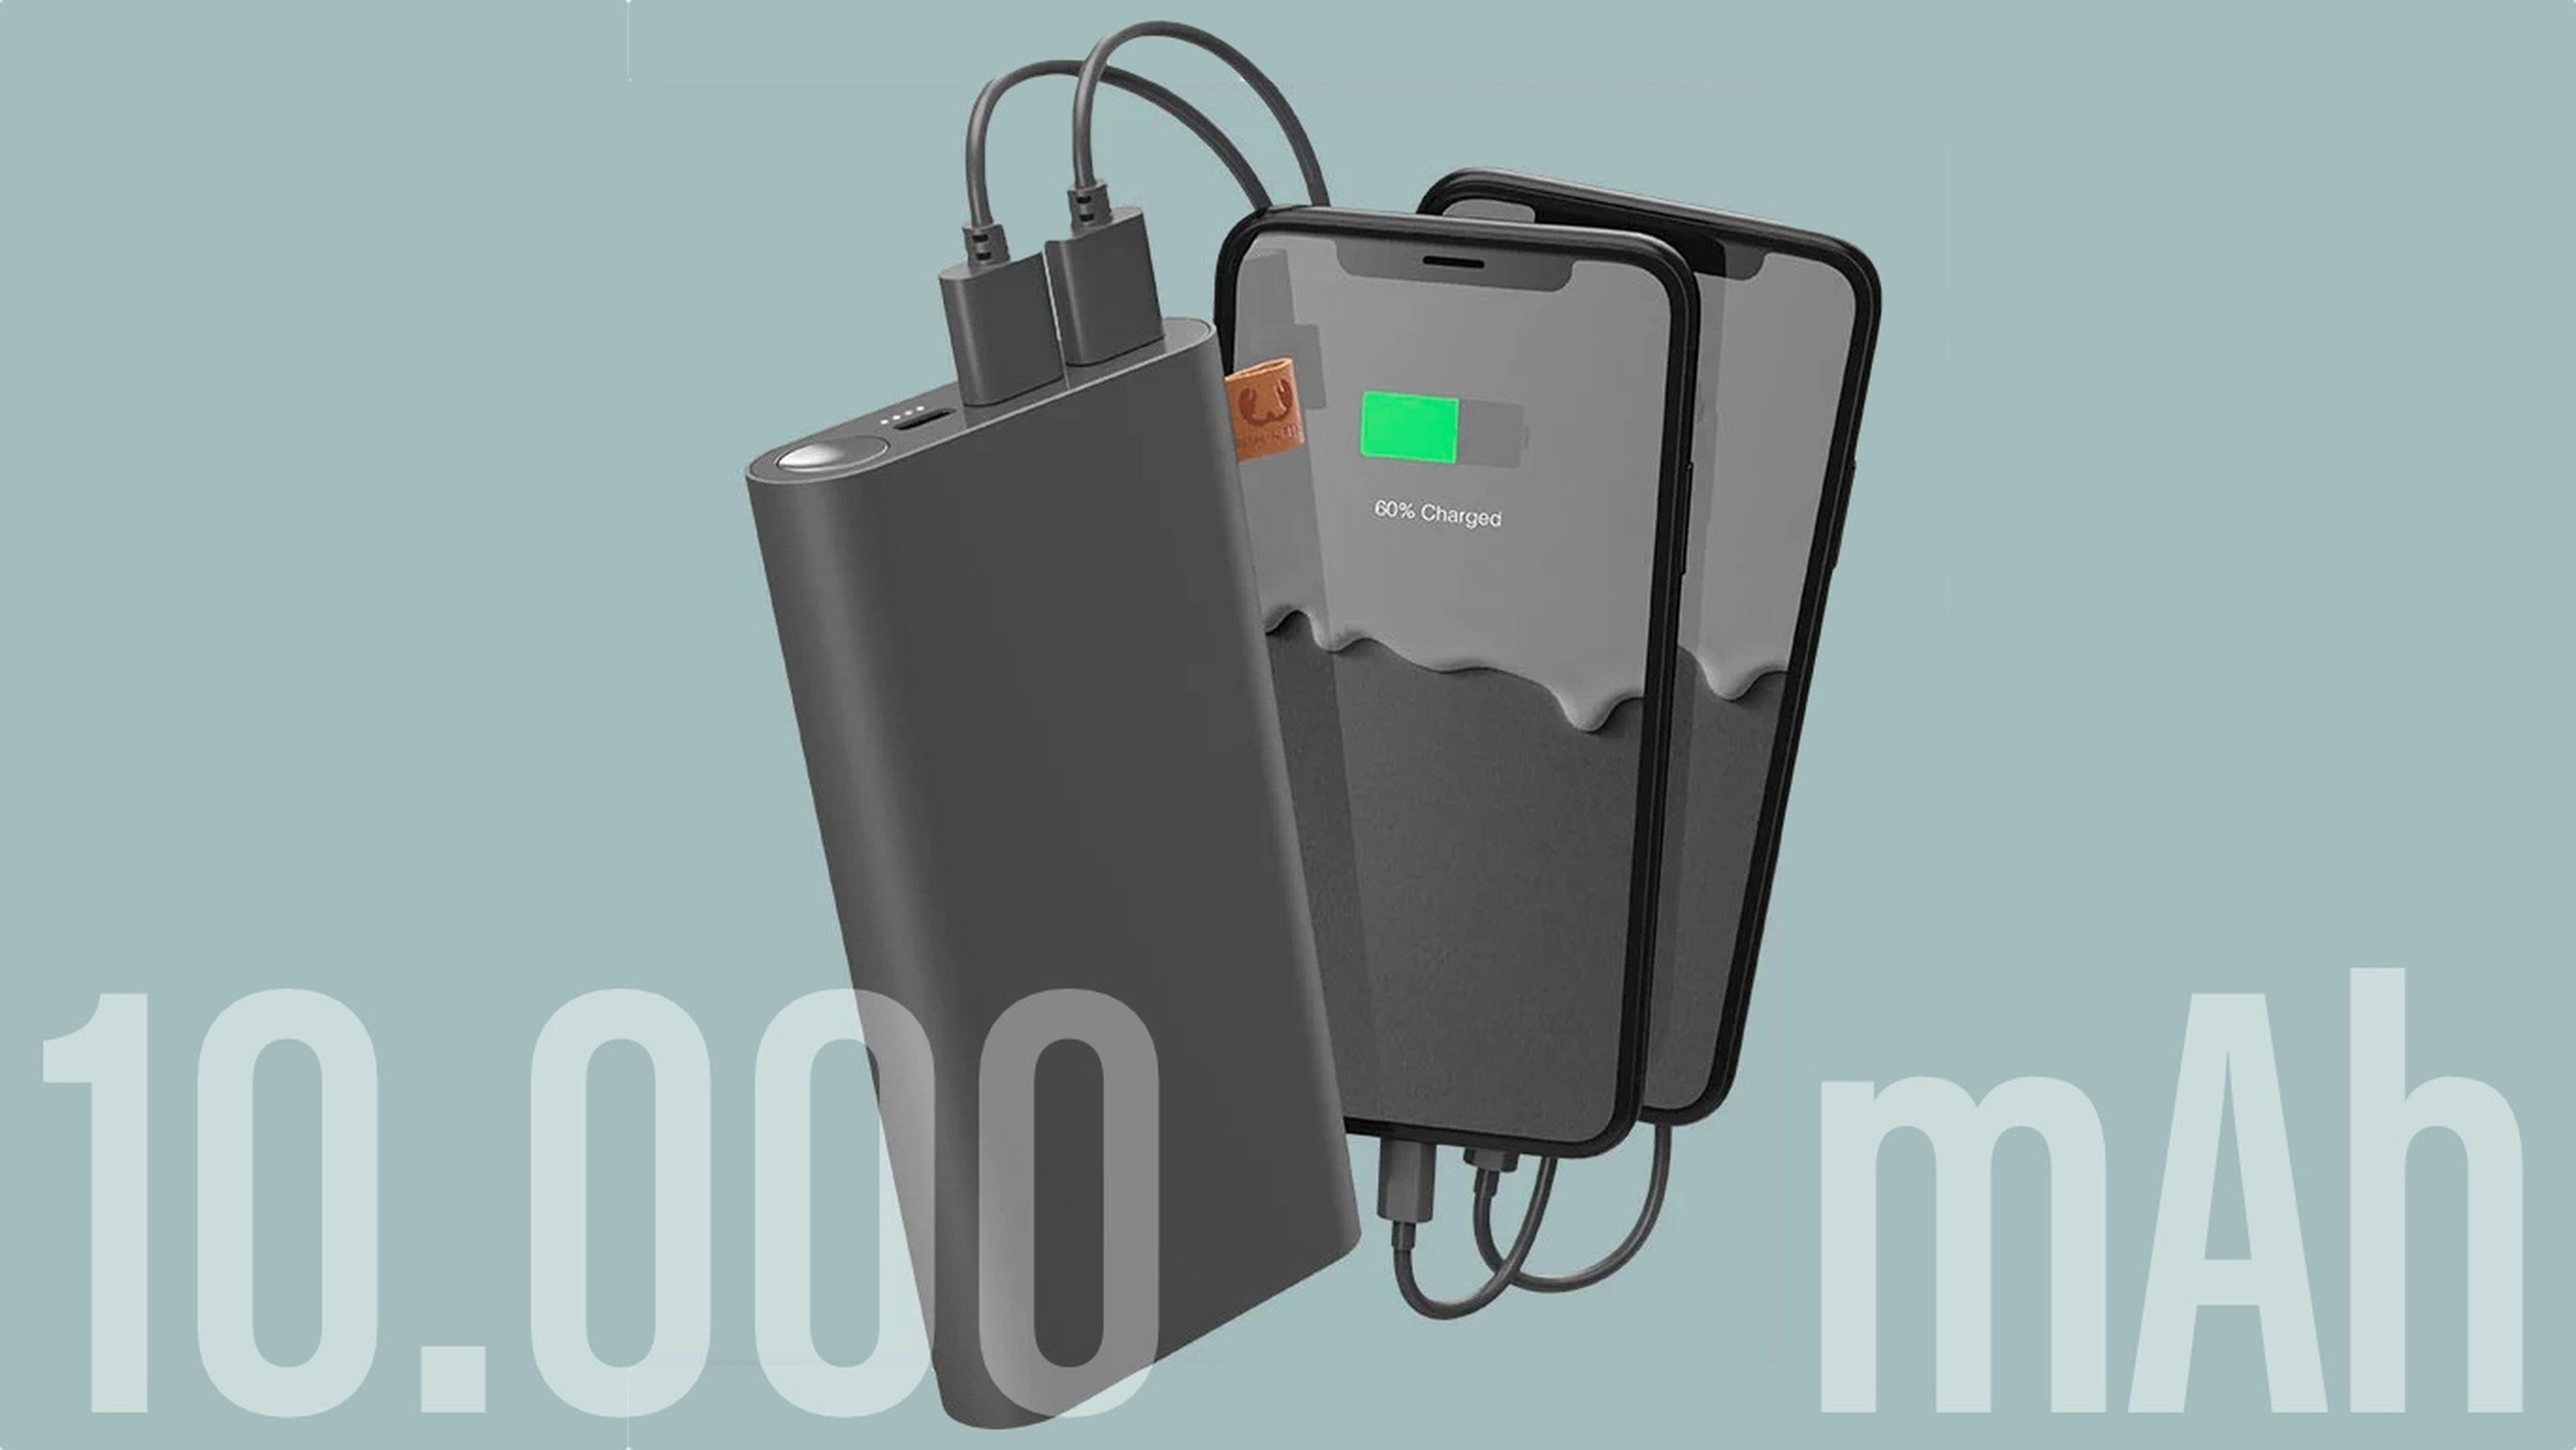 Me quiero comprar una powerbank (batería externa), ¿qué debo tener en  cuenta?